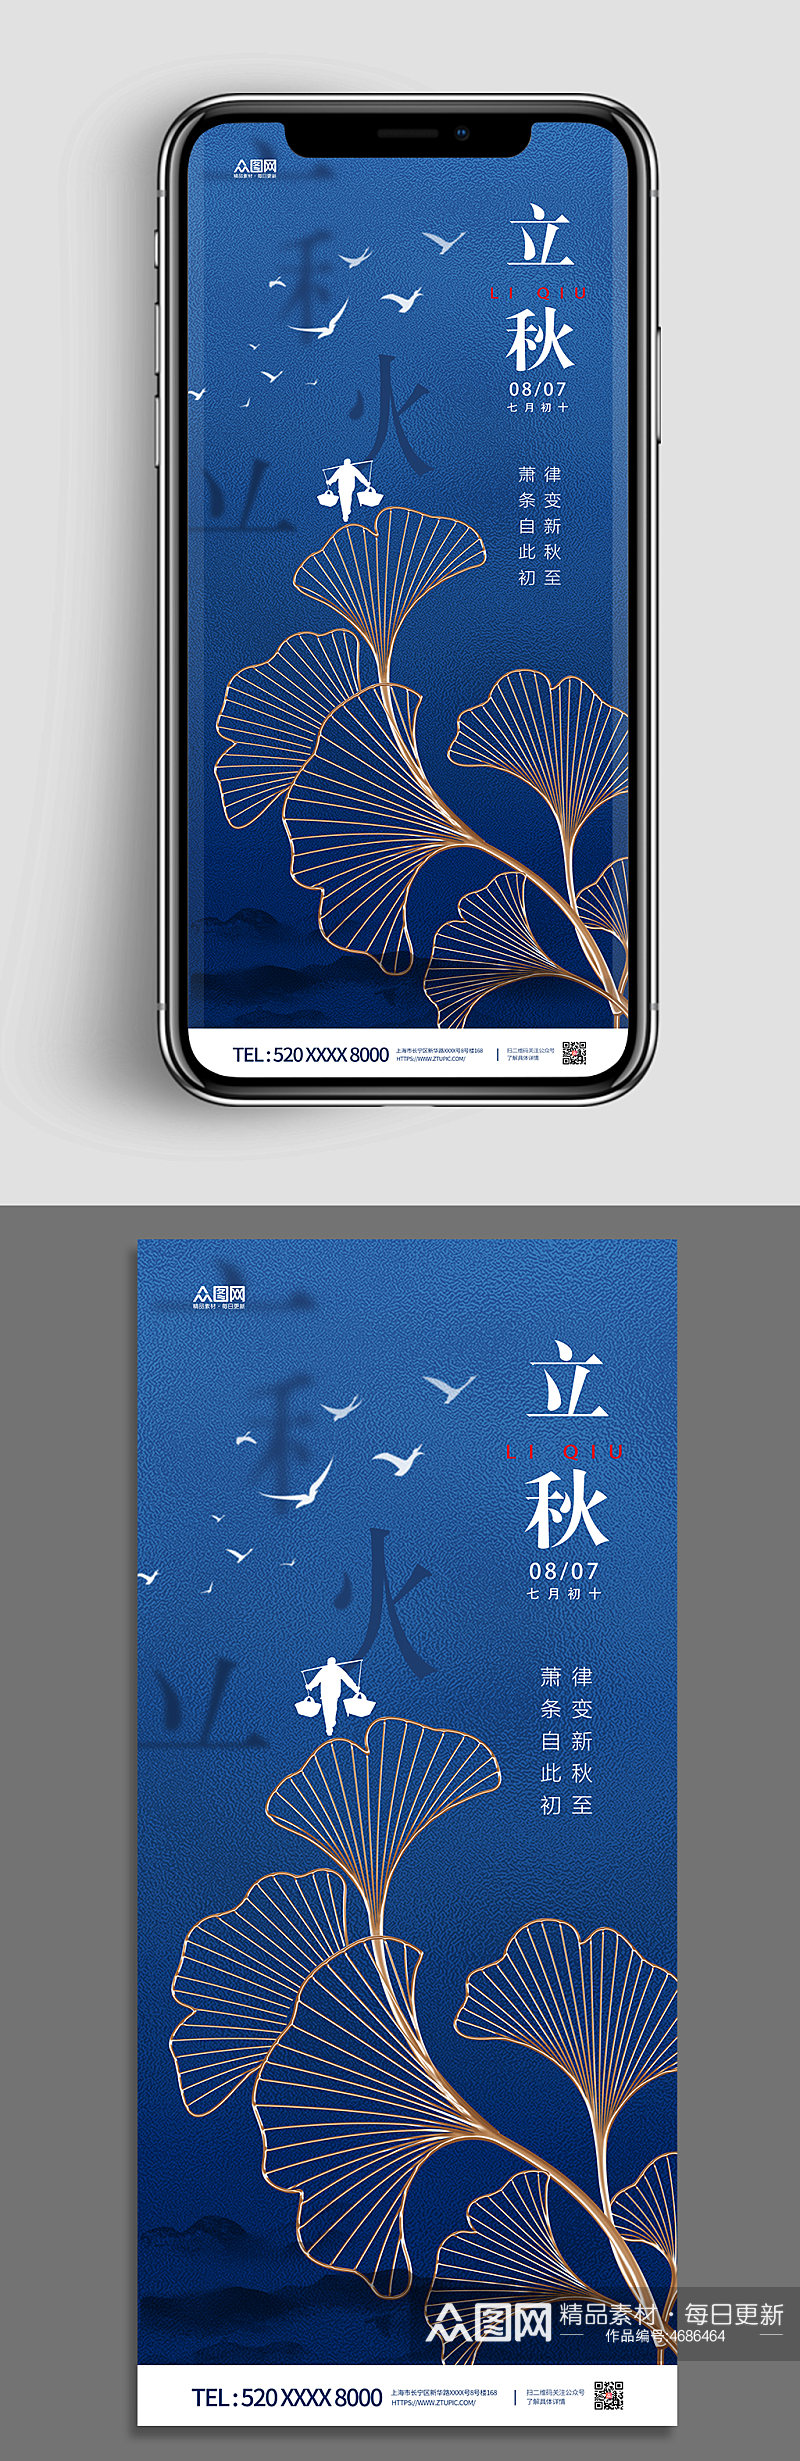 立秋中国风蓝色分幅手机壁纸中国风简约海报素材